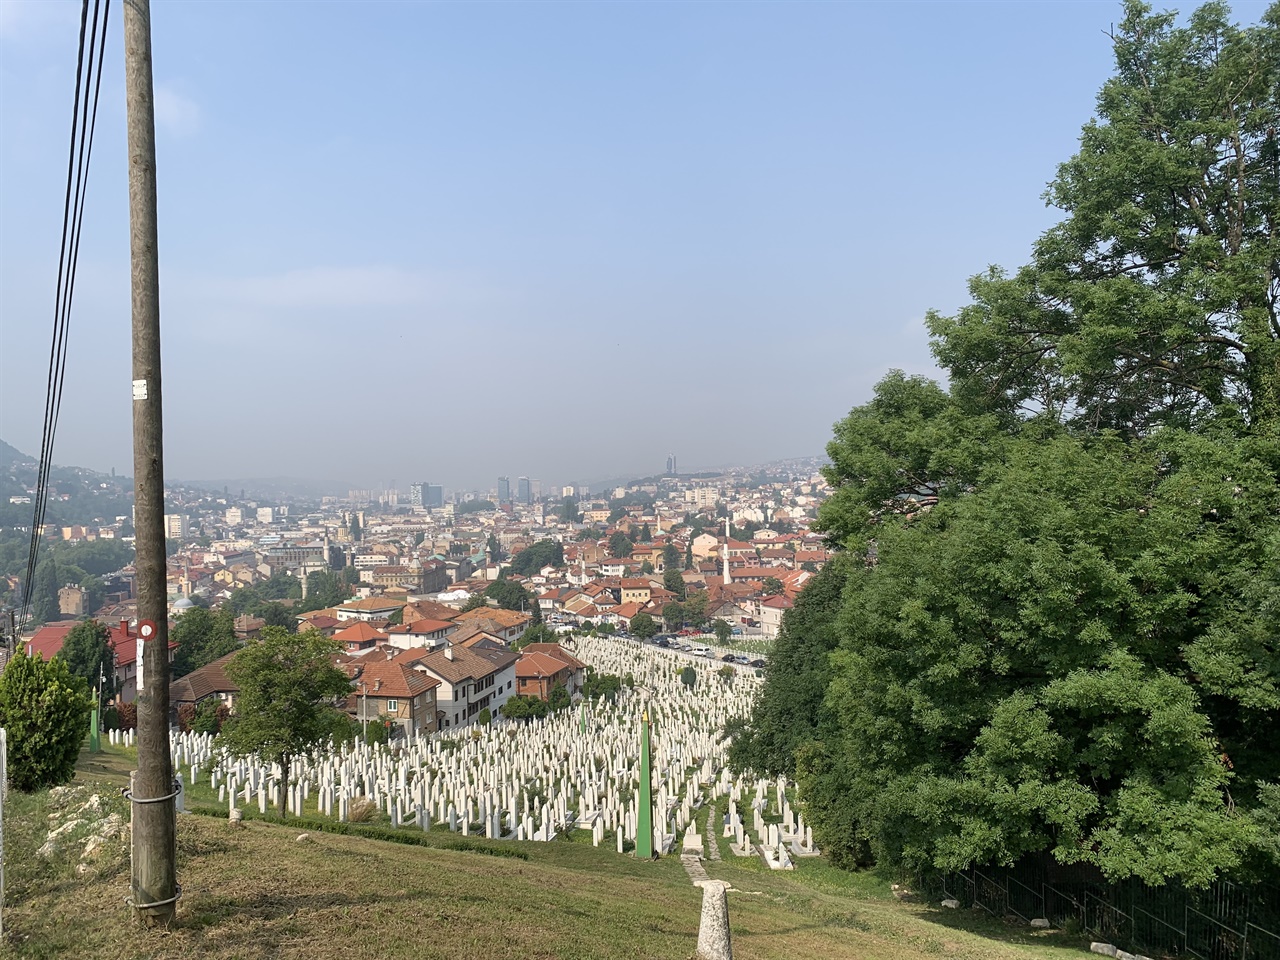 보스니아 헤체르고비나의 수도 사라예보 모습 1990년대 보스니아전쟁 중 사라예보 1425일 봉쇄기간 무려 1만 1541명이 희생되었다. 급하게 묘지가 필요했던 도시는 아이들이 놀던 공원들을 공동묘지로 전용하기에 이르렀다. 
